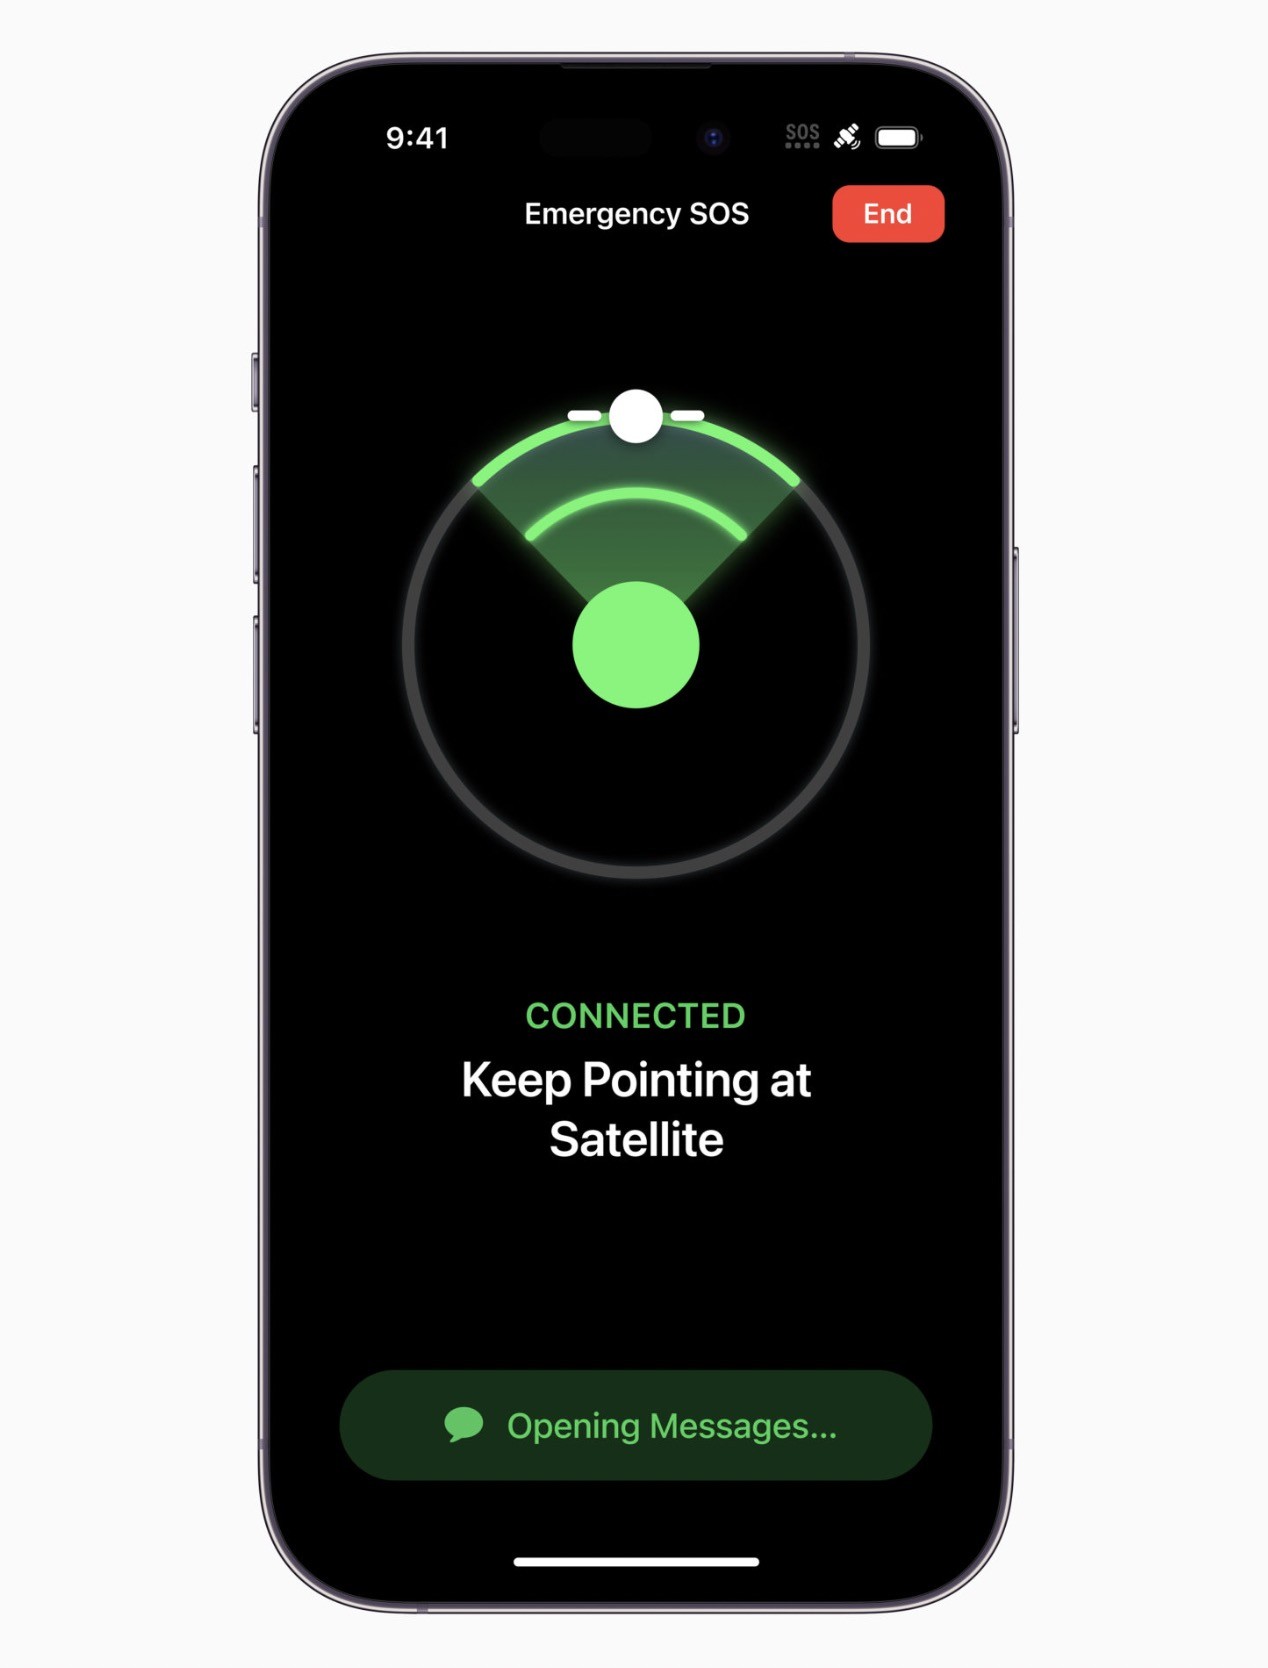 Jak działa "wykrywanie wypadku" i "alarmowe sos przez satelitę" w iPhone 14 ciekawostki wykrywanie wypadku w iphone 14, wykrywanie wypadku, jak dziala wykrywanie wypadku w iphone, jak dziala alarmowe sos przez satelitę w iphone, alarmowe sos przez satelitę w iphone, alarmowe sos przez satelitę, Accident Detection  W serii iPhone 14 znalazły się dwie funkcje związane z bezpieczeństwem: "Wykrywanie wypadku" oraz "Alarmowe SOS przez satelitę". Jak działają? satelita 2